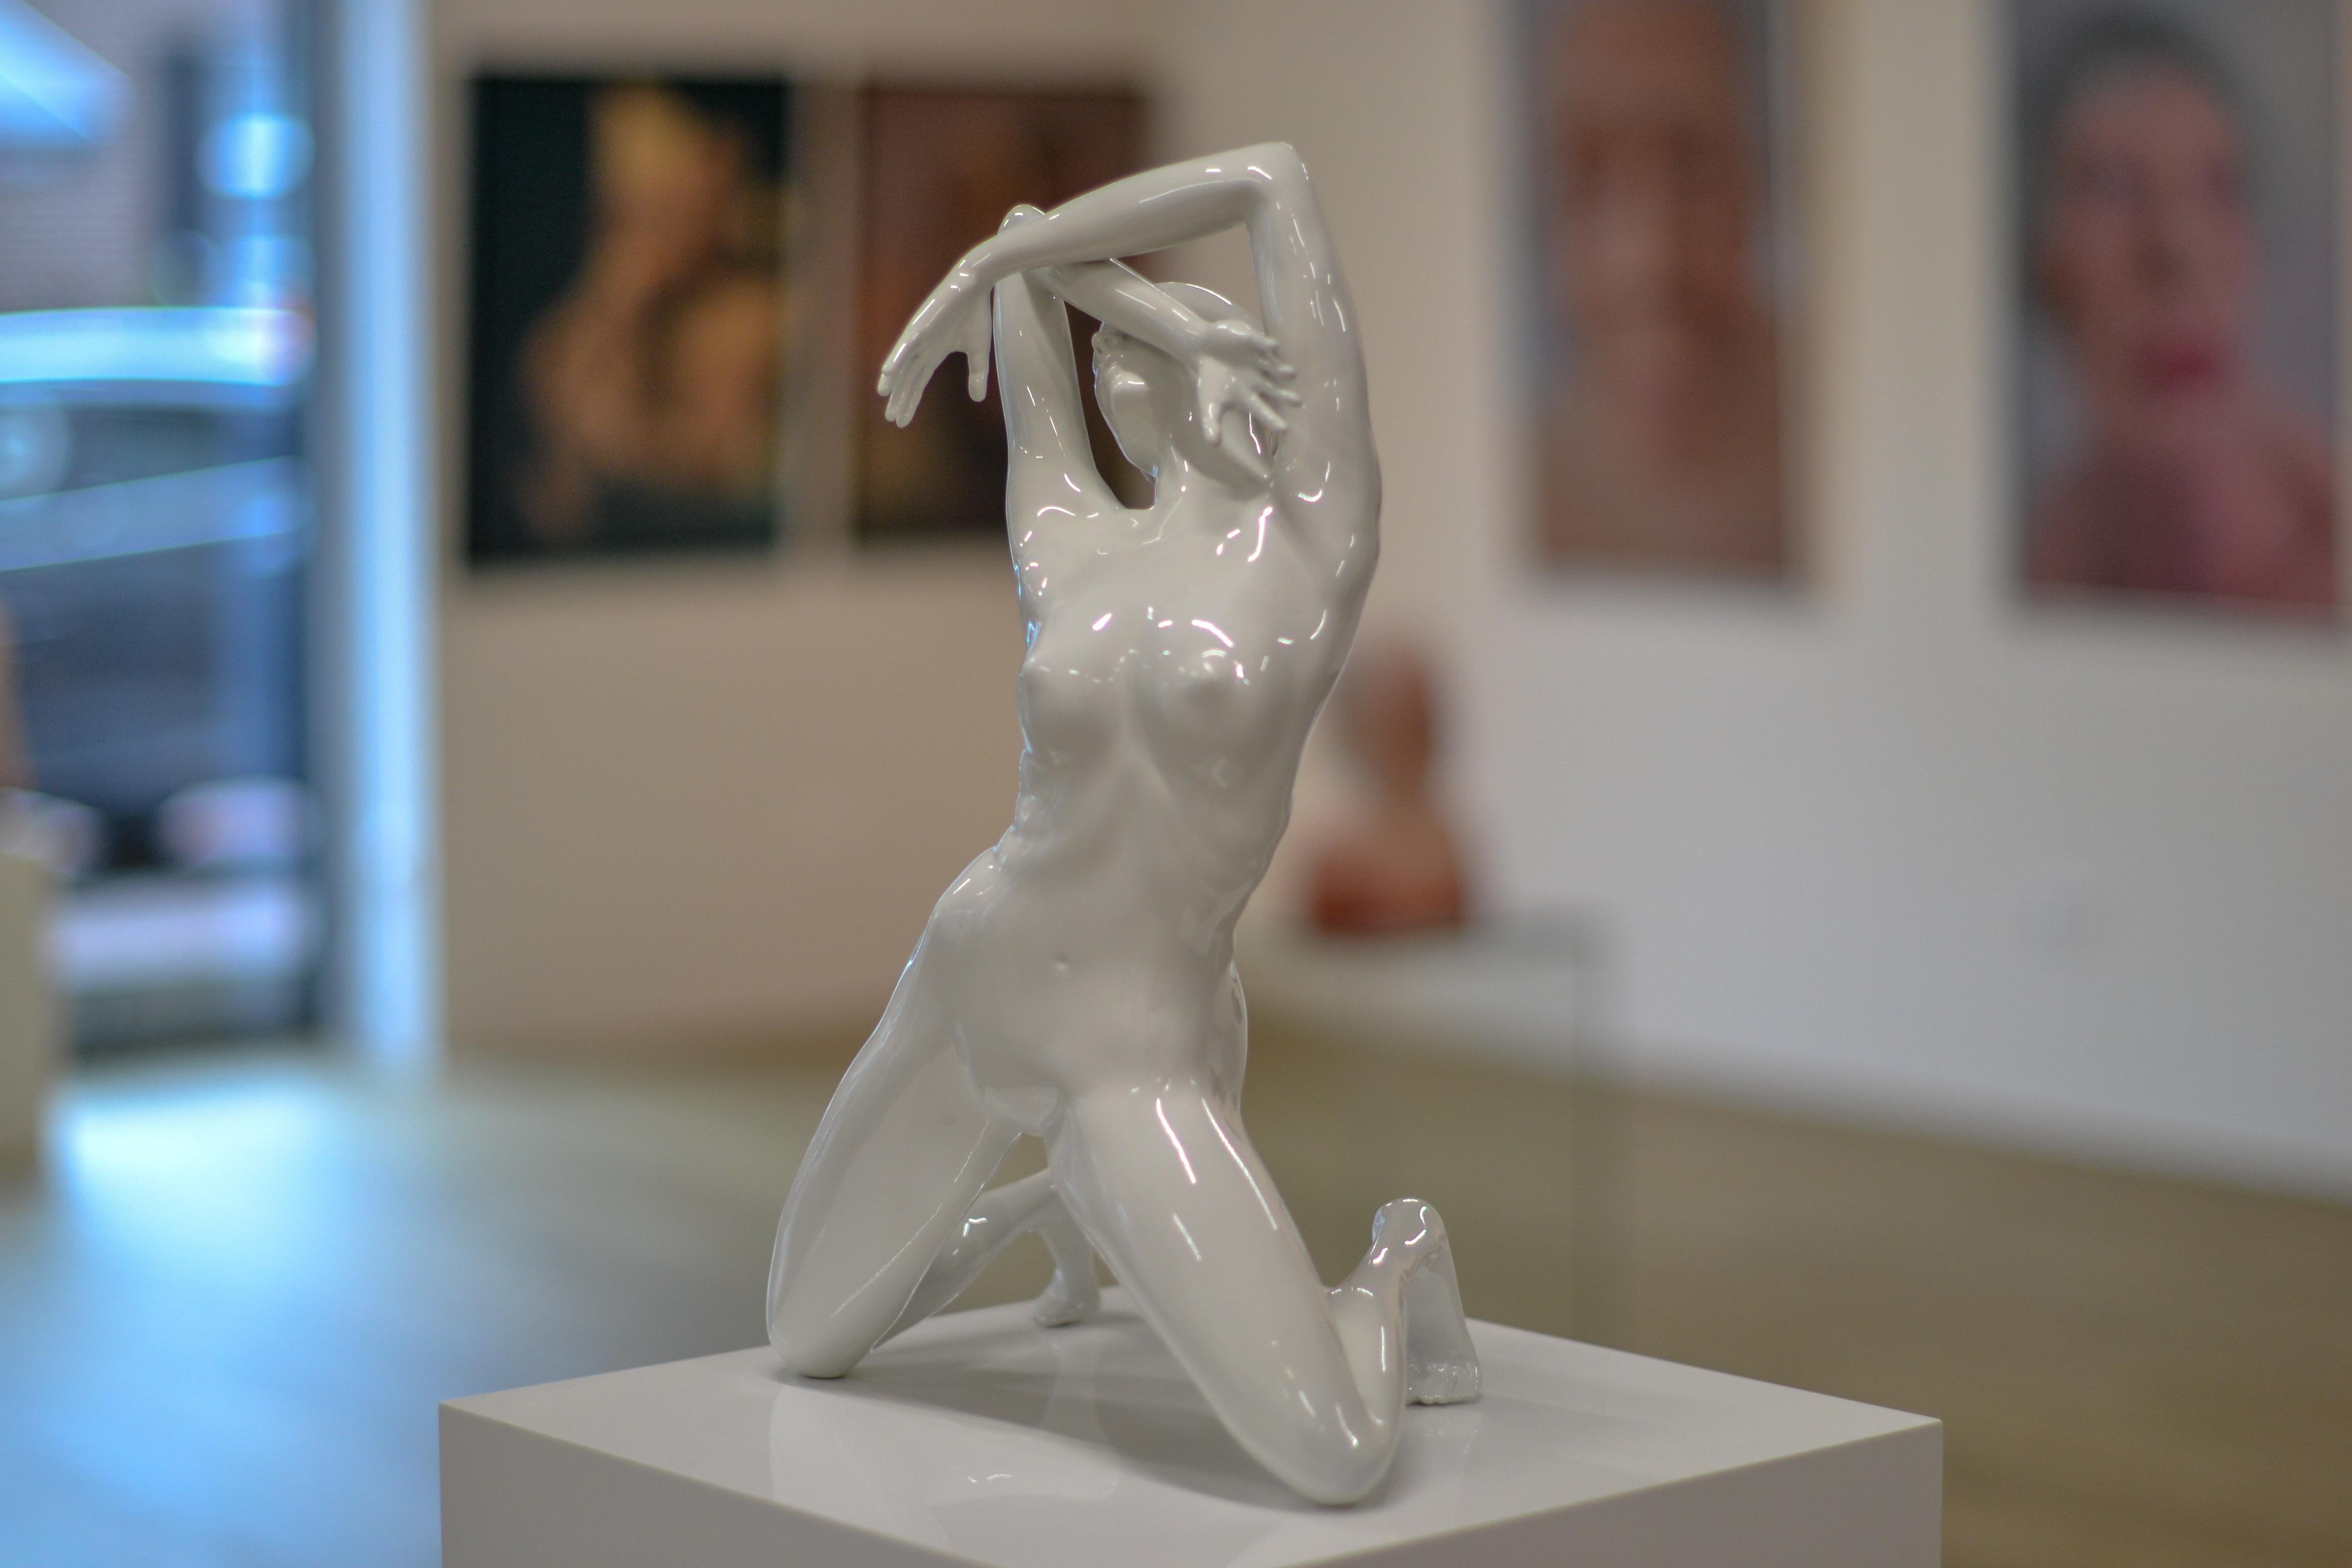 Andries Velting ist ein neuer Künstler in der Gallerie Bonnard. Seine bewegten Skulpturen von Tänzern sind eine besondere Ergänzung zu unserer bestehenden Sammlung.

Sagt Velting:
